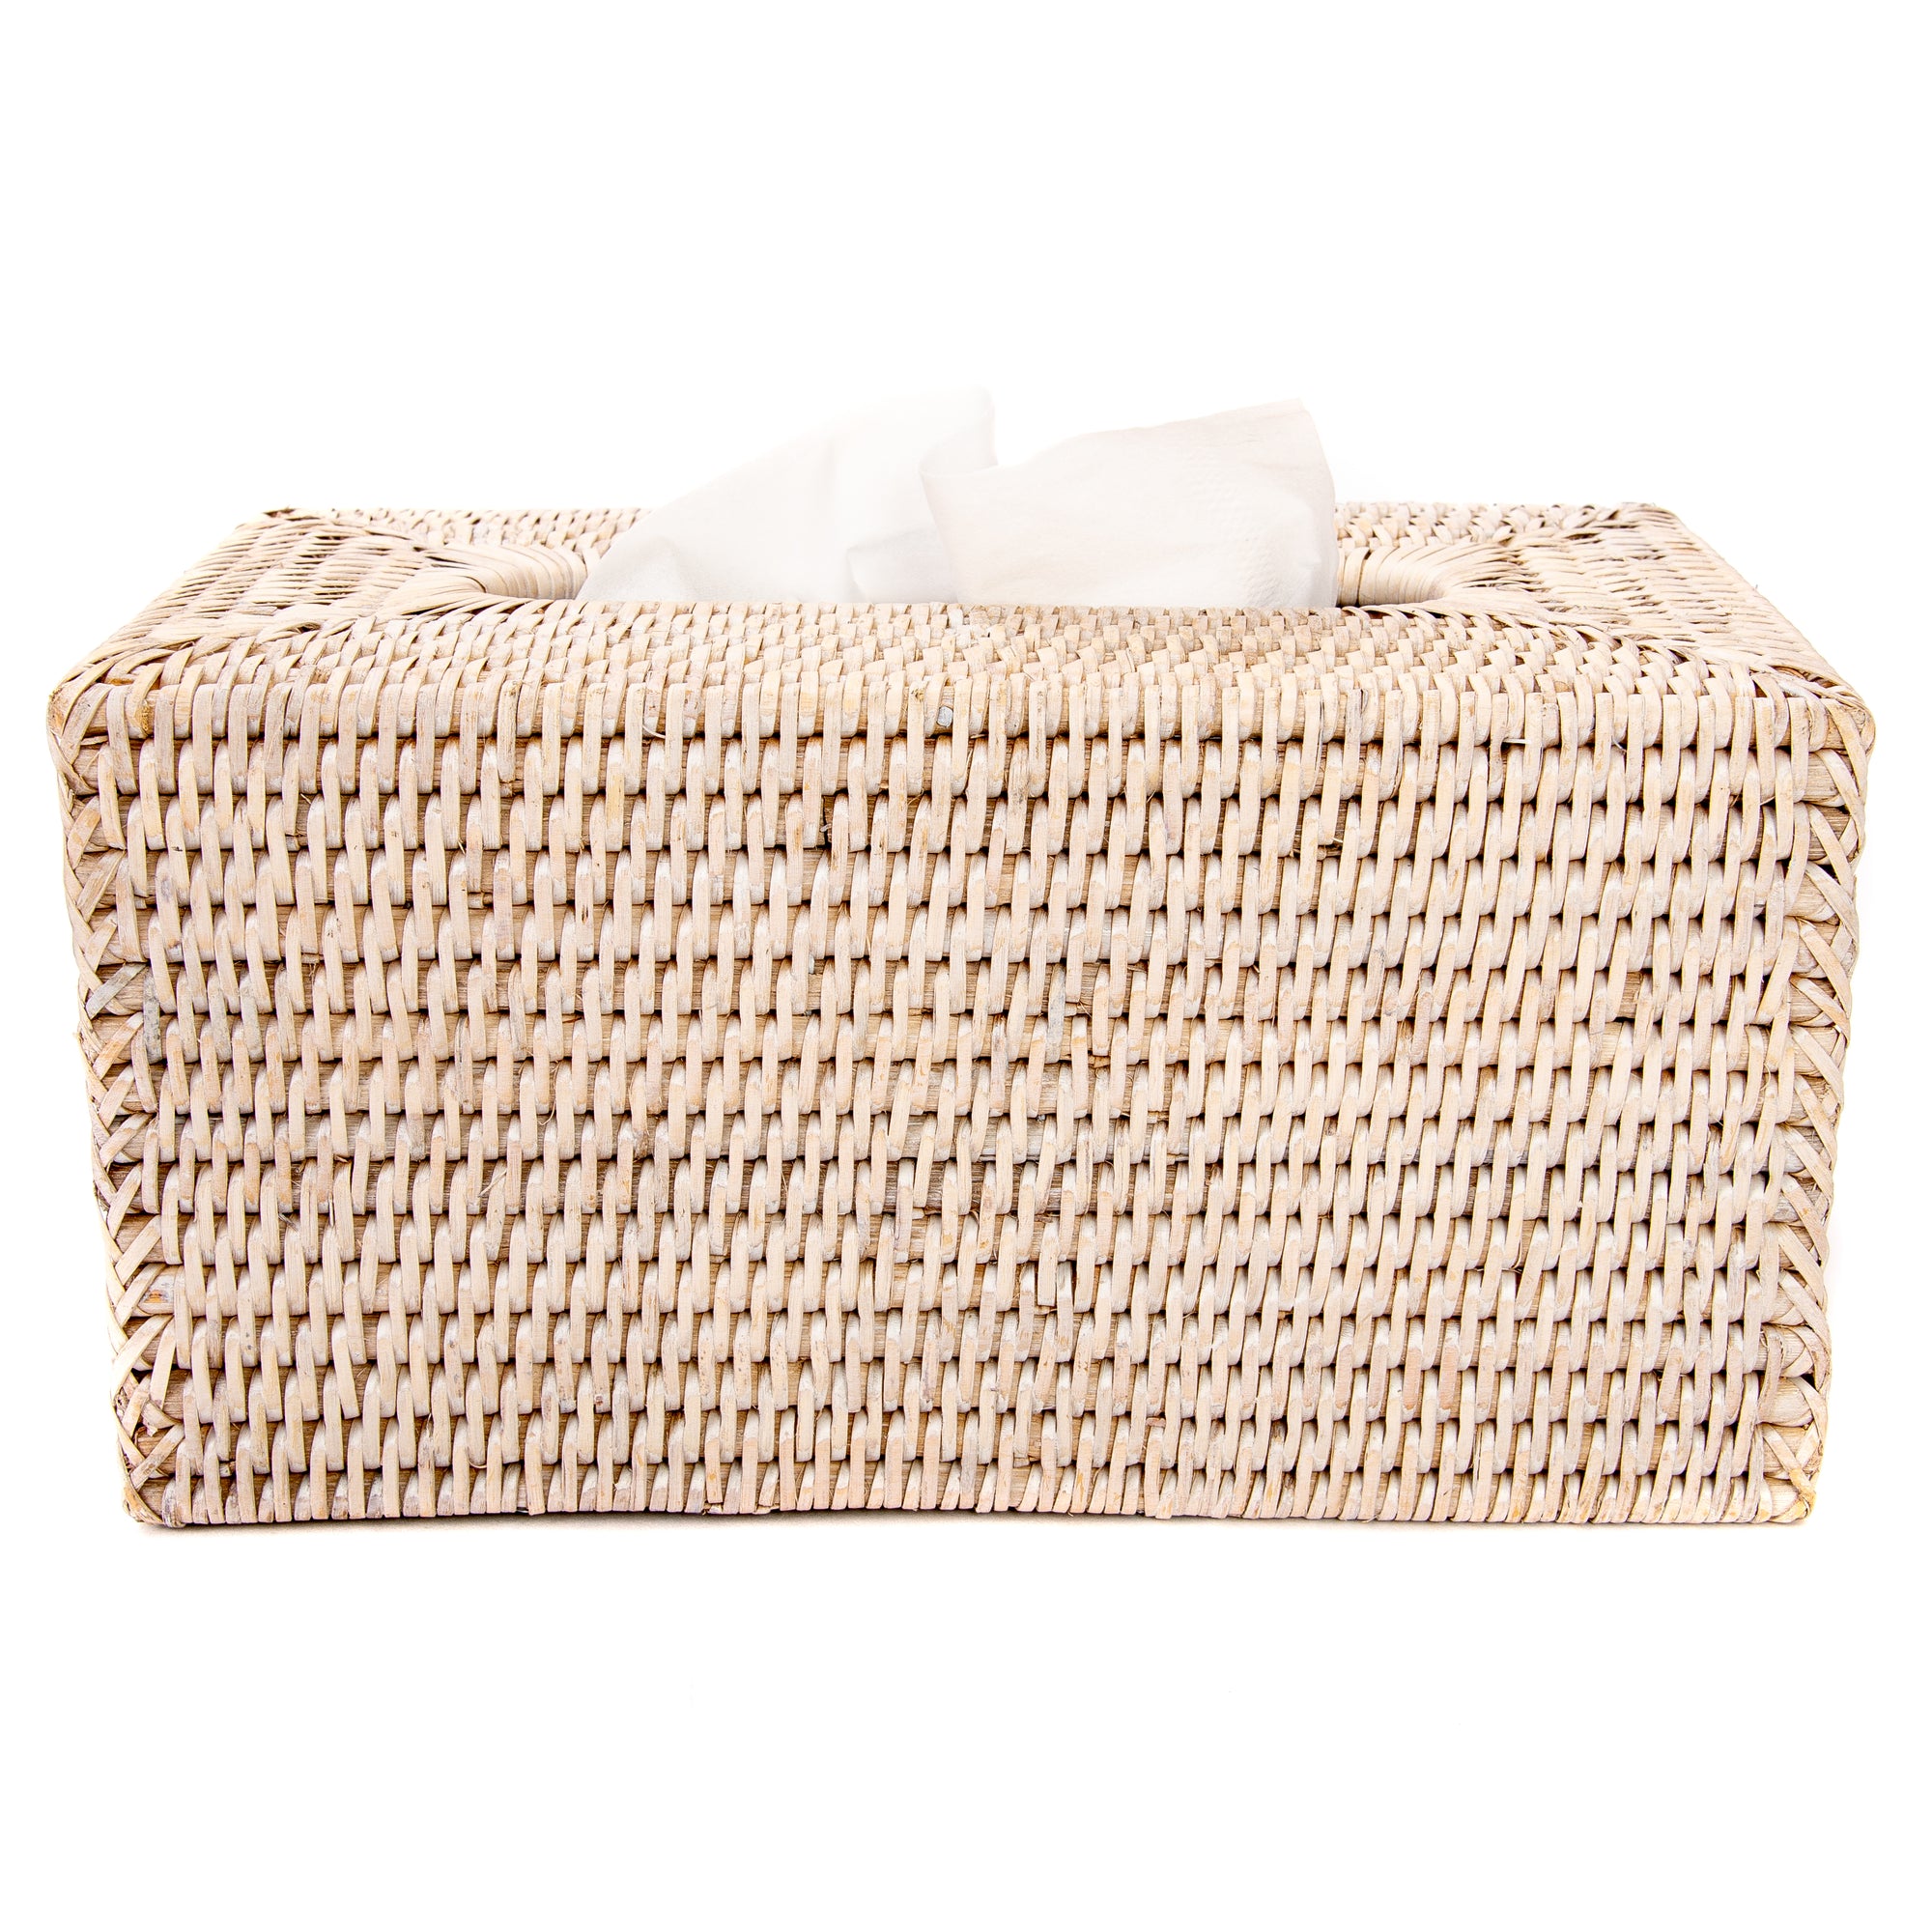 Rectangular Tissue Box Cover White Wash